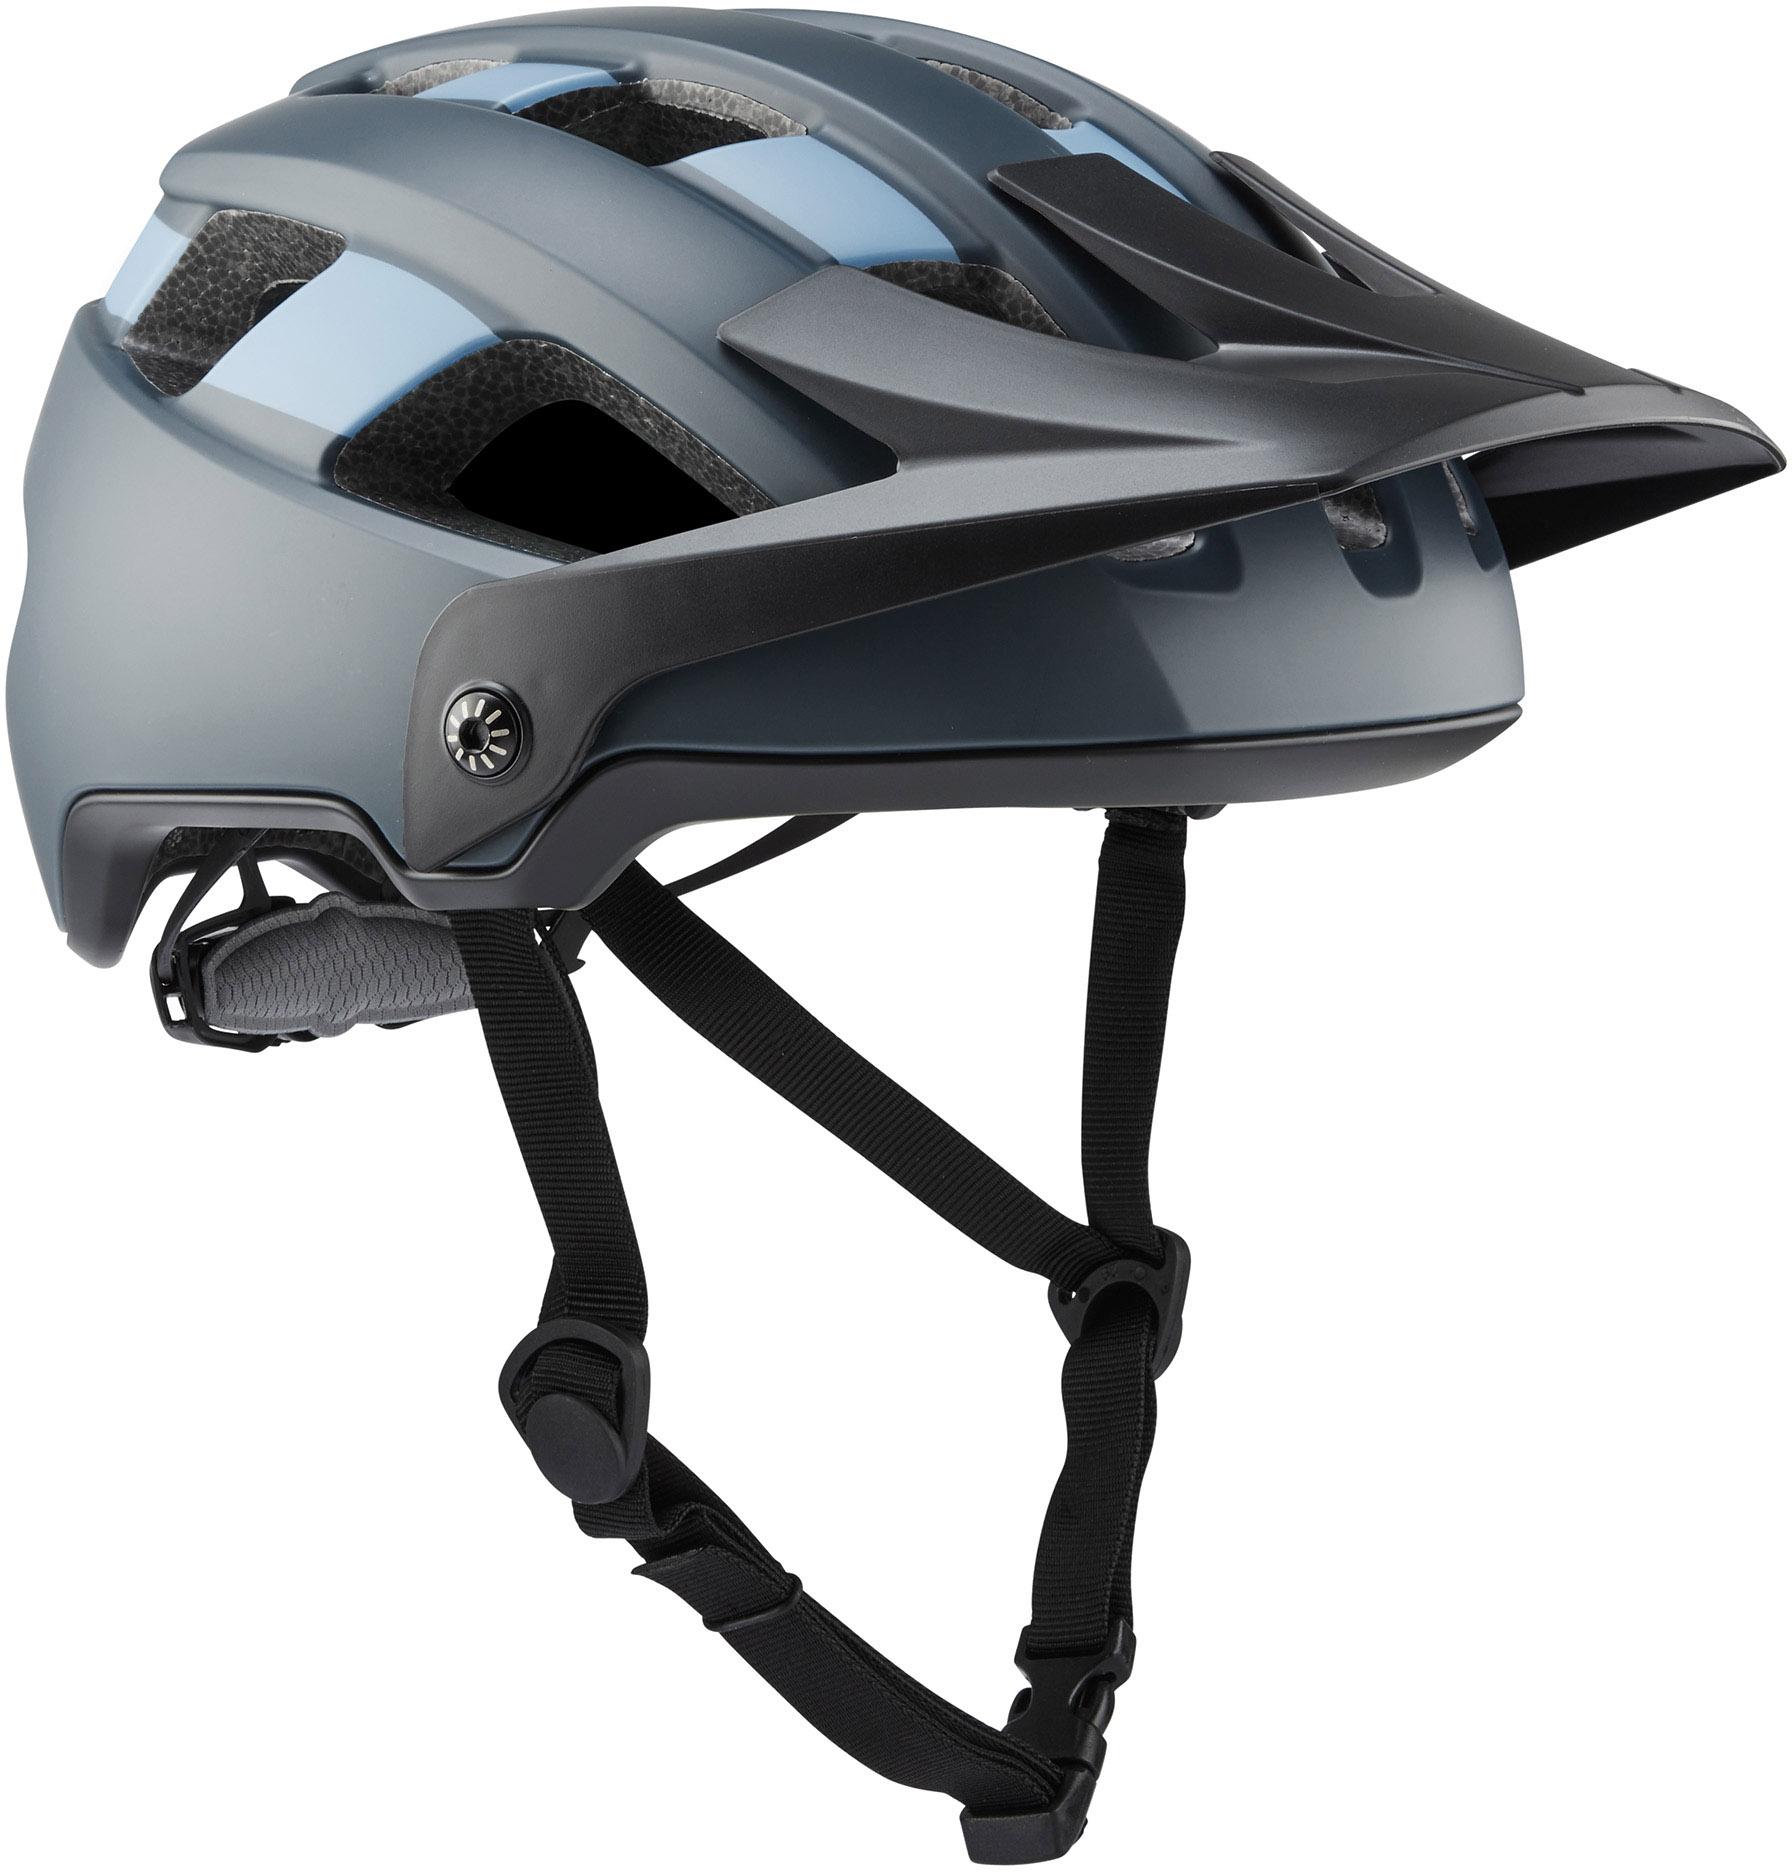 Brand-x Eh1 Enduro Mtb Cycling Helmet  Slate/blue